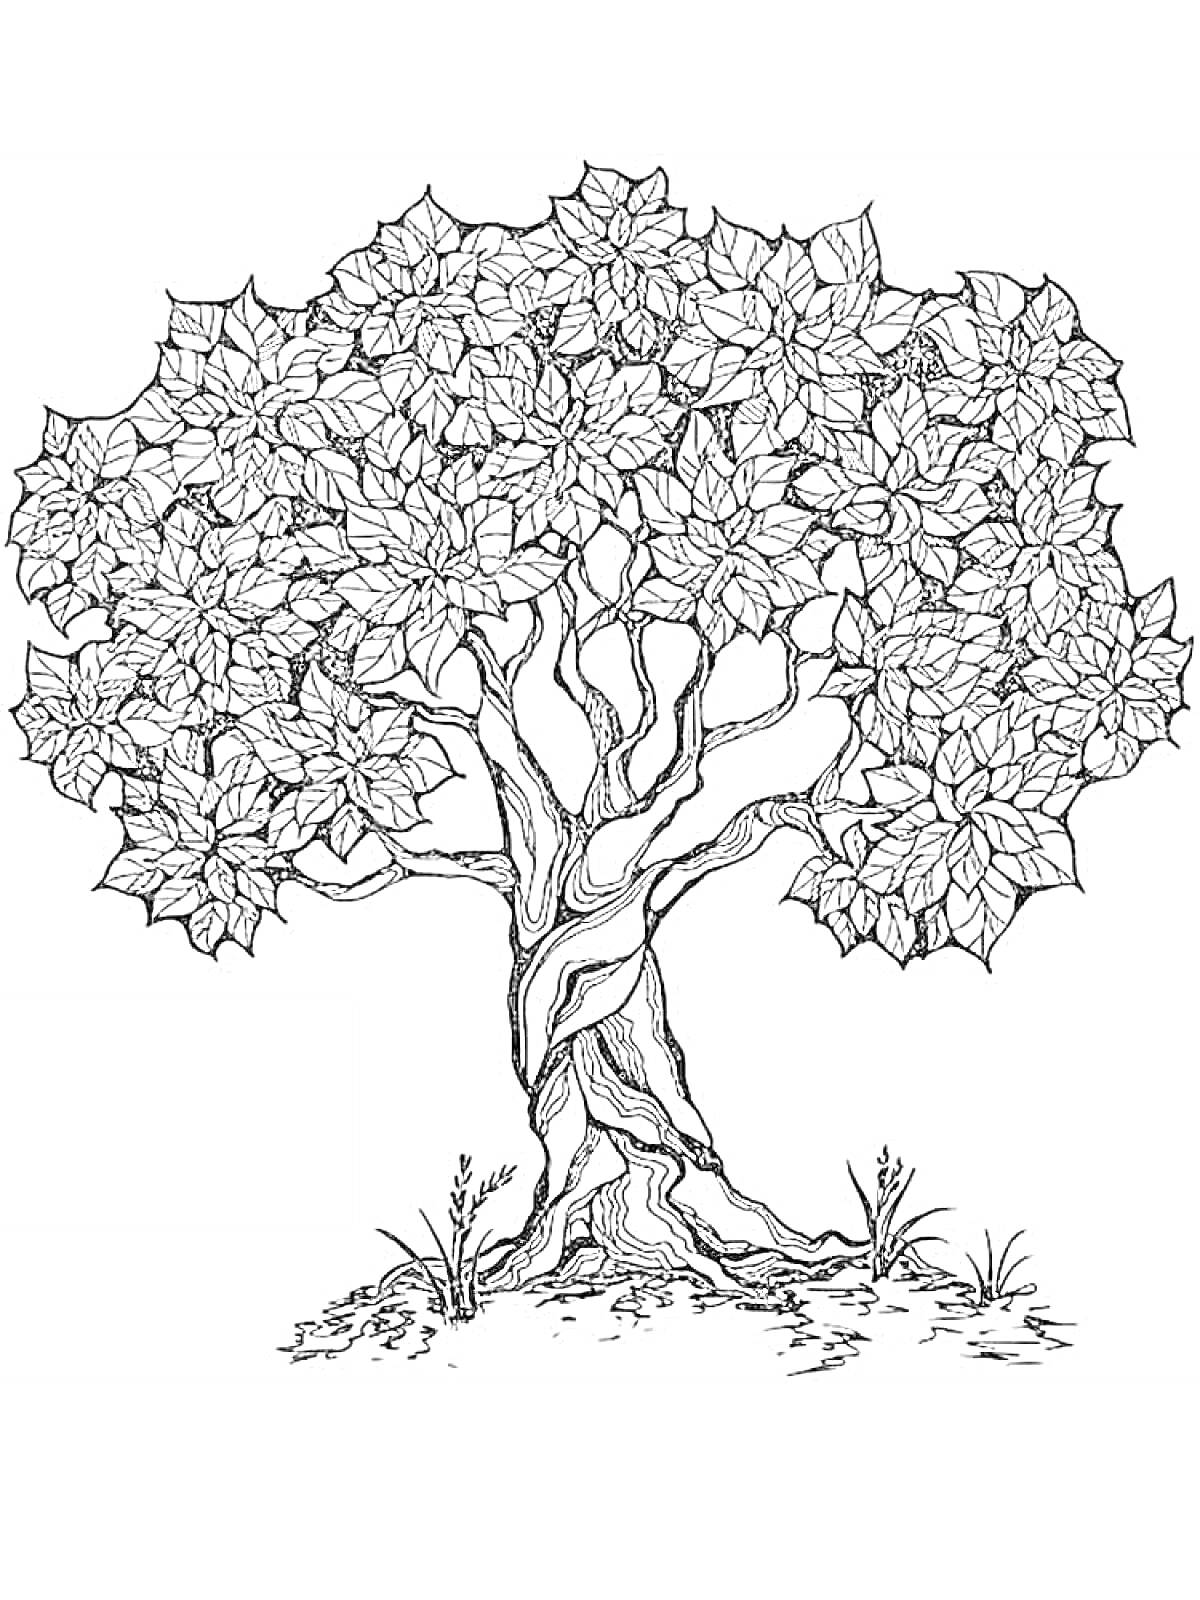 Антистресс раскраска с детализированным деревом, включающим переплетенные ветви, листву и траву у корней